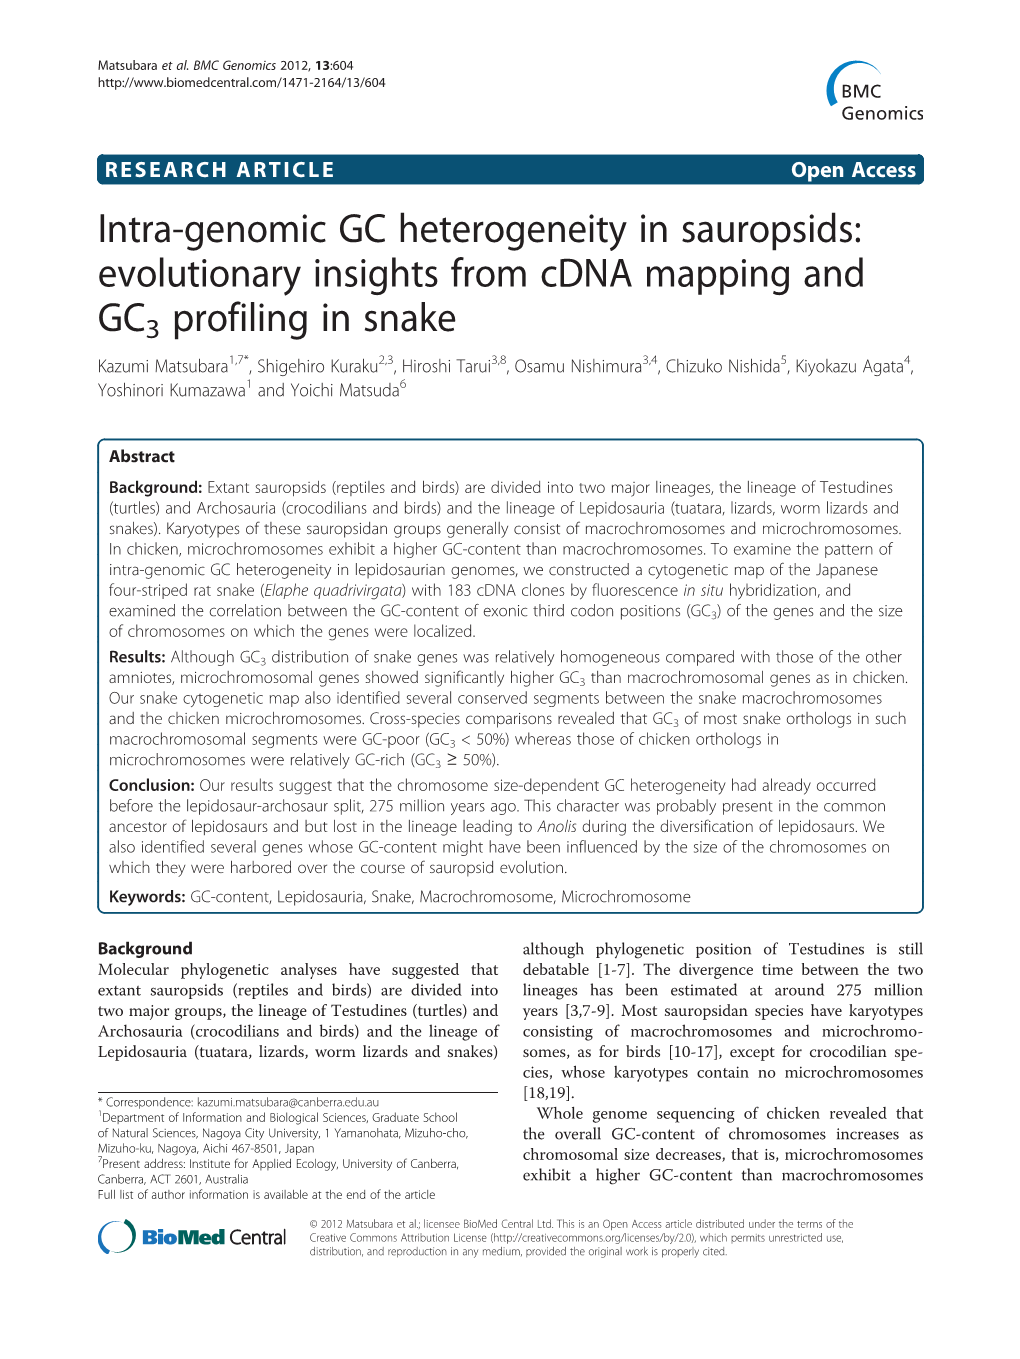 Intra-Genomic GC Heterogeneity in Sauropsids